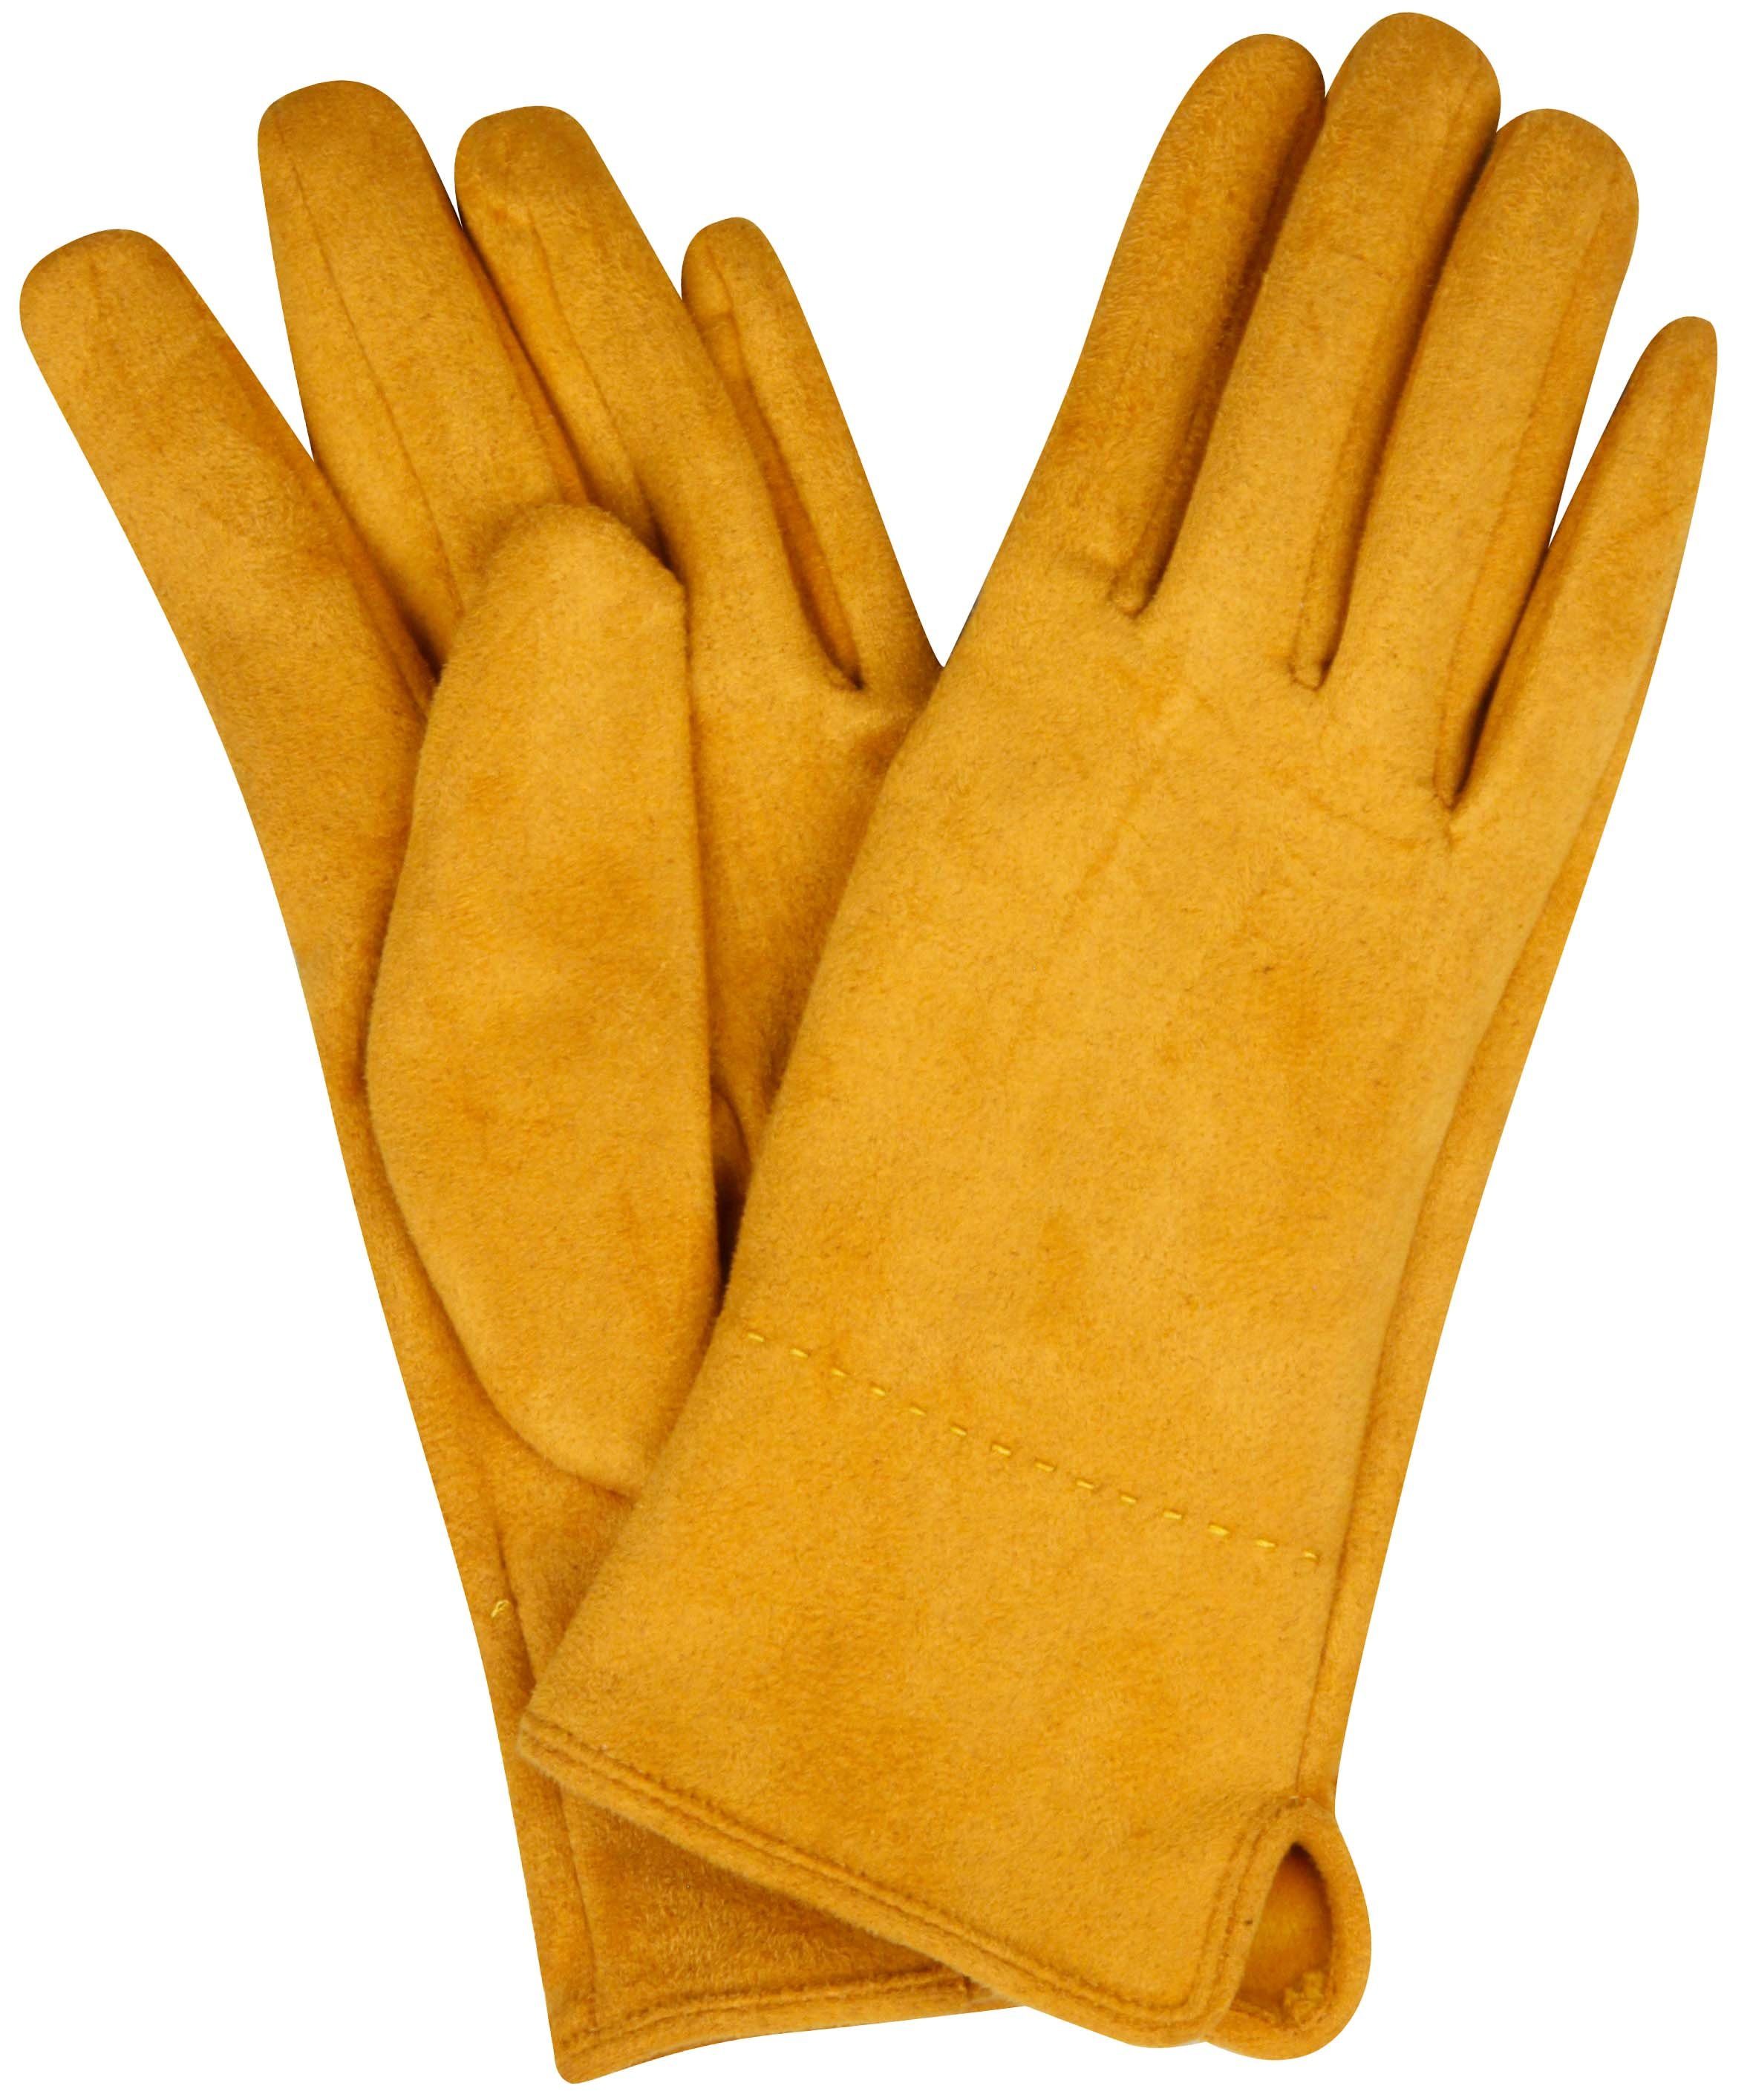 kolossal Capelli New York Wildlederoptik mustard Strickhandschuhe Handschuhe